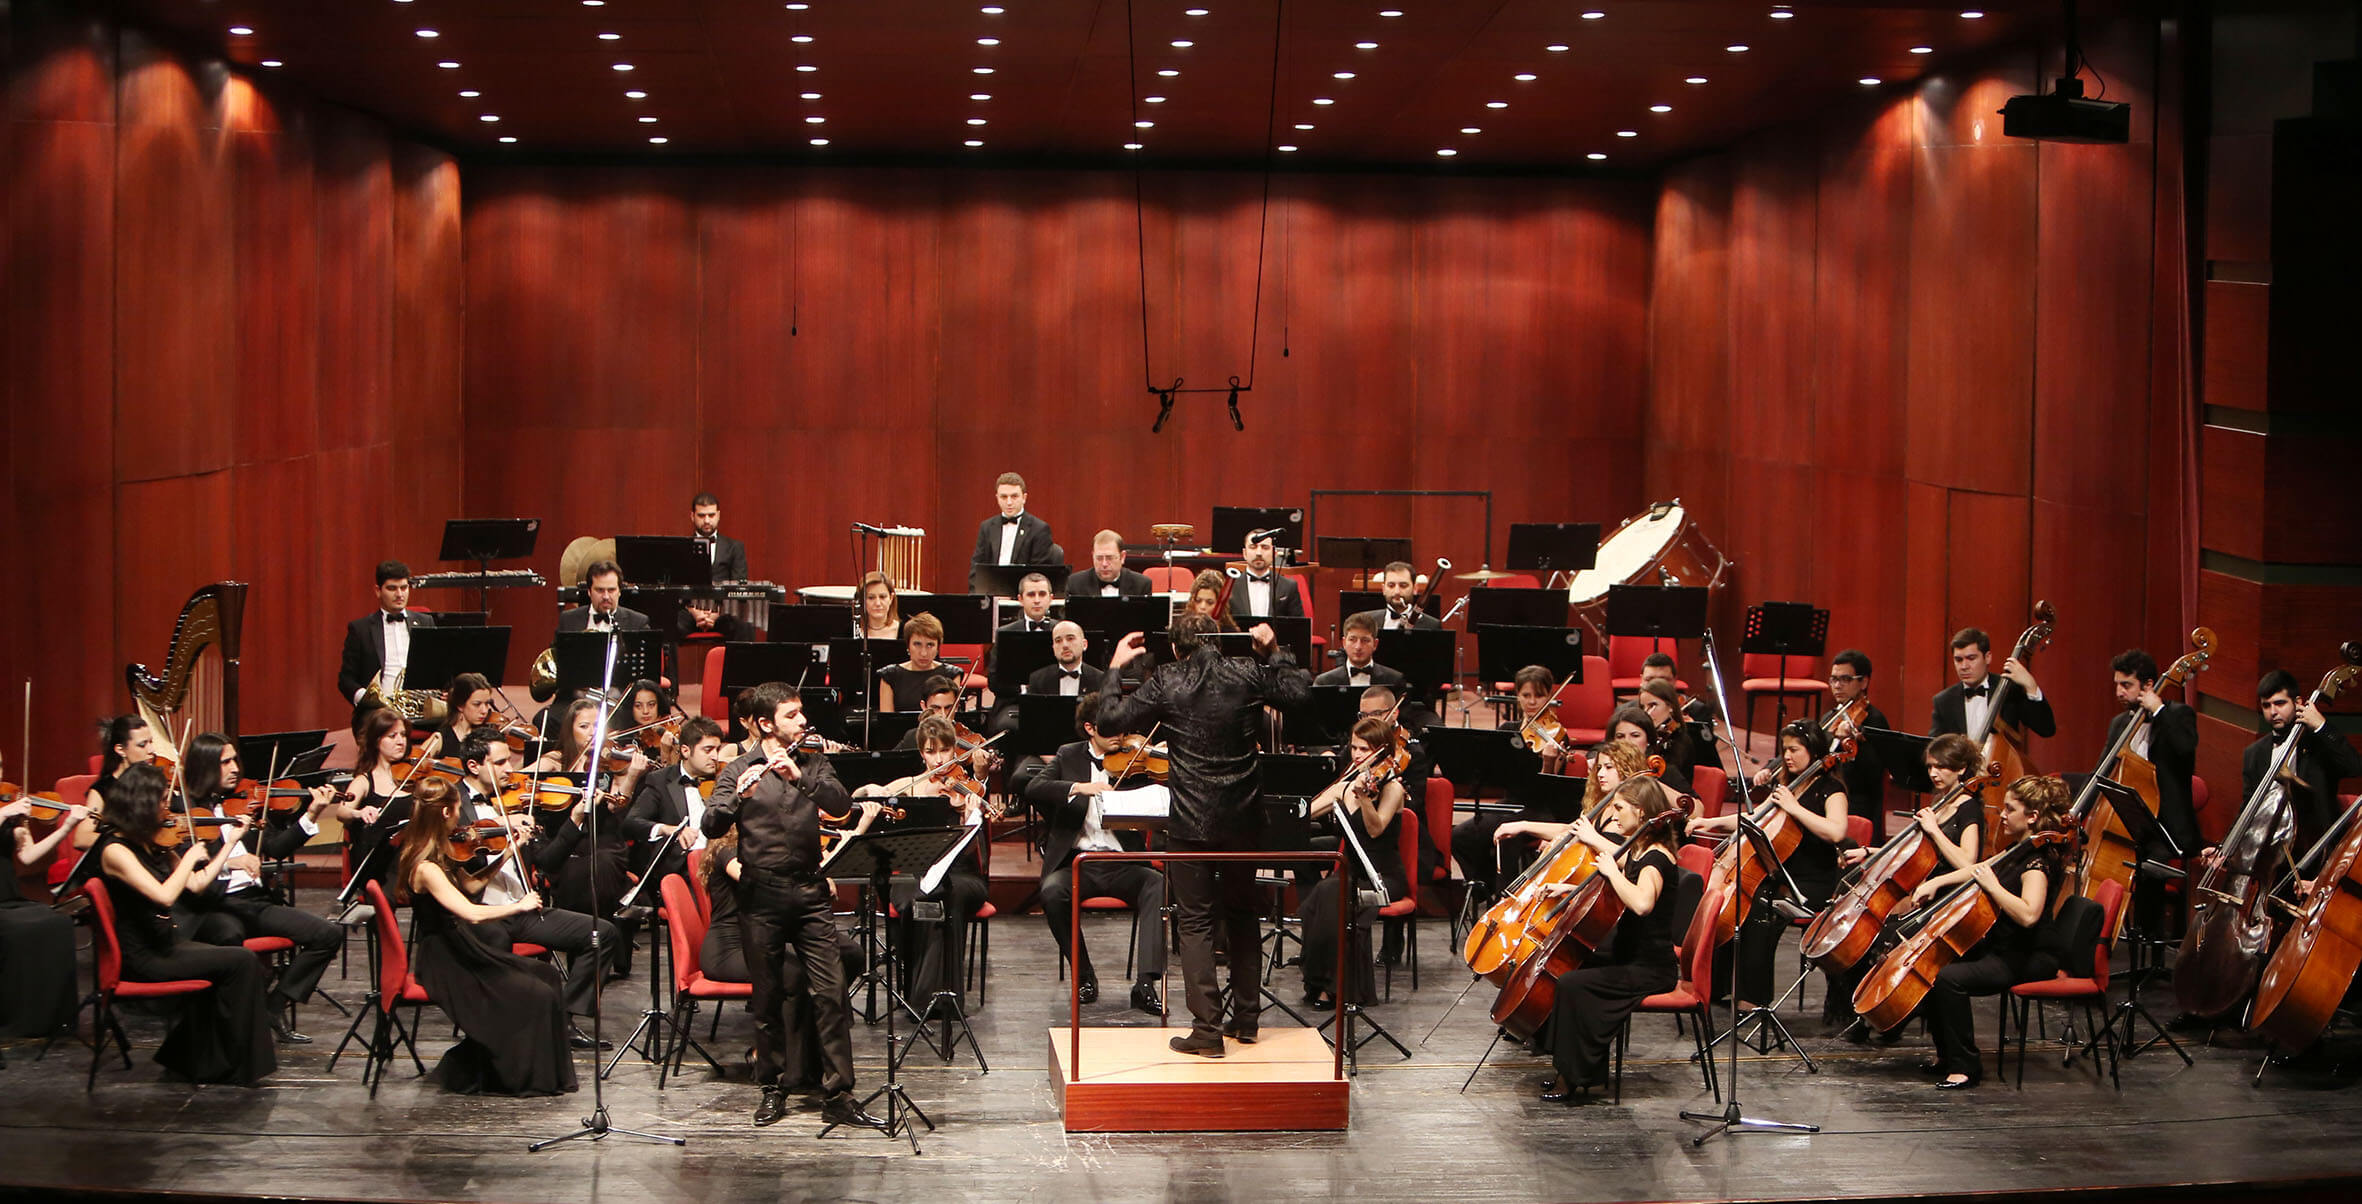 Türkiye'deki orkestralar, Türk şeflerle çalışmalı